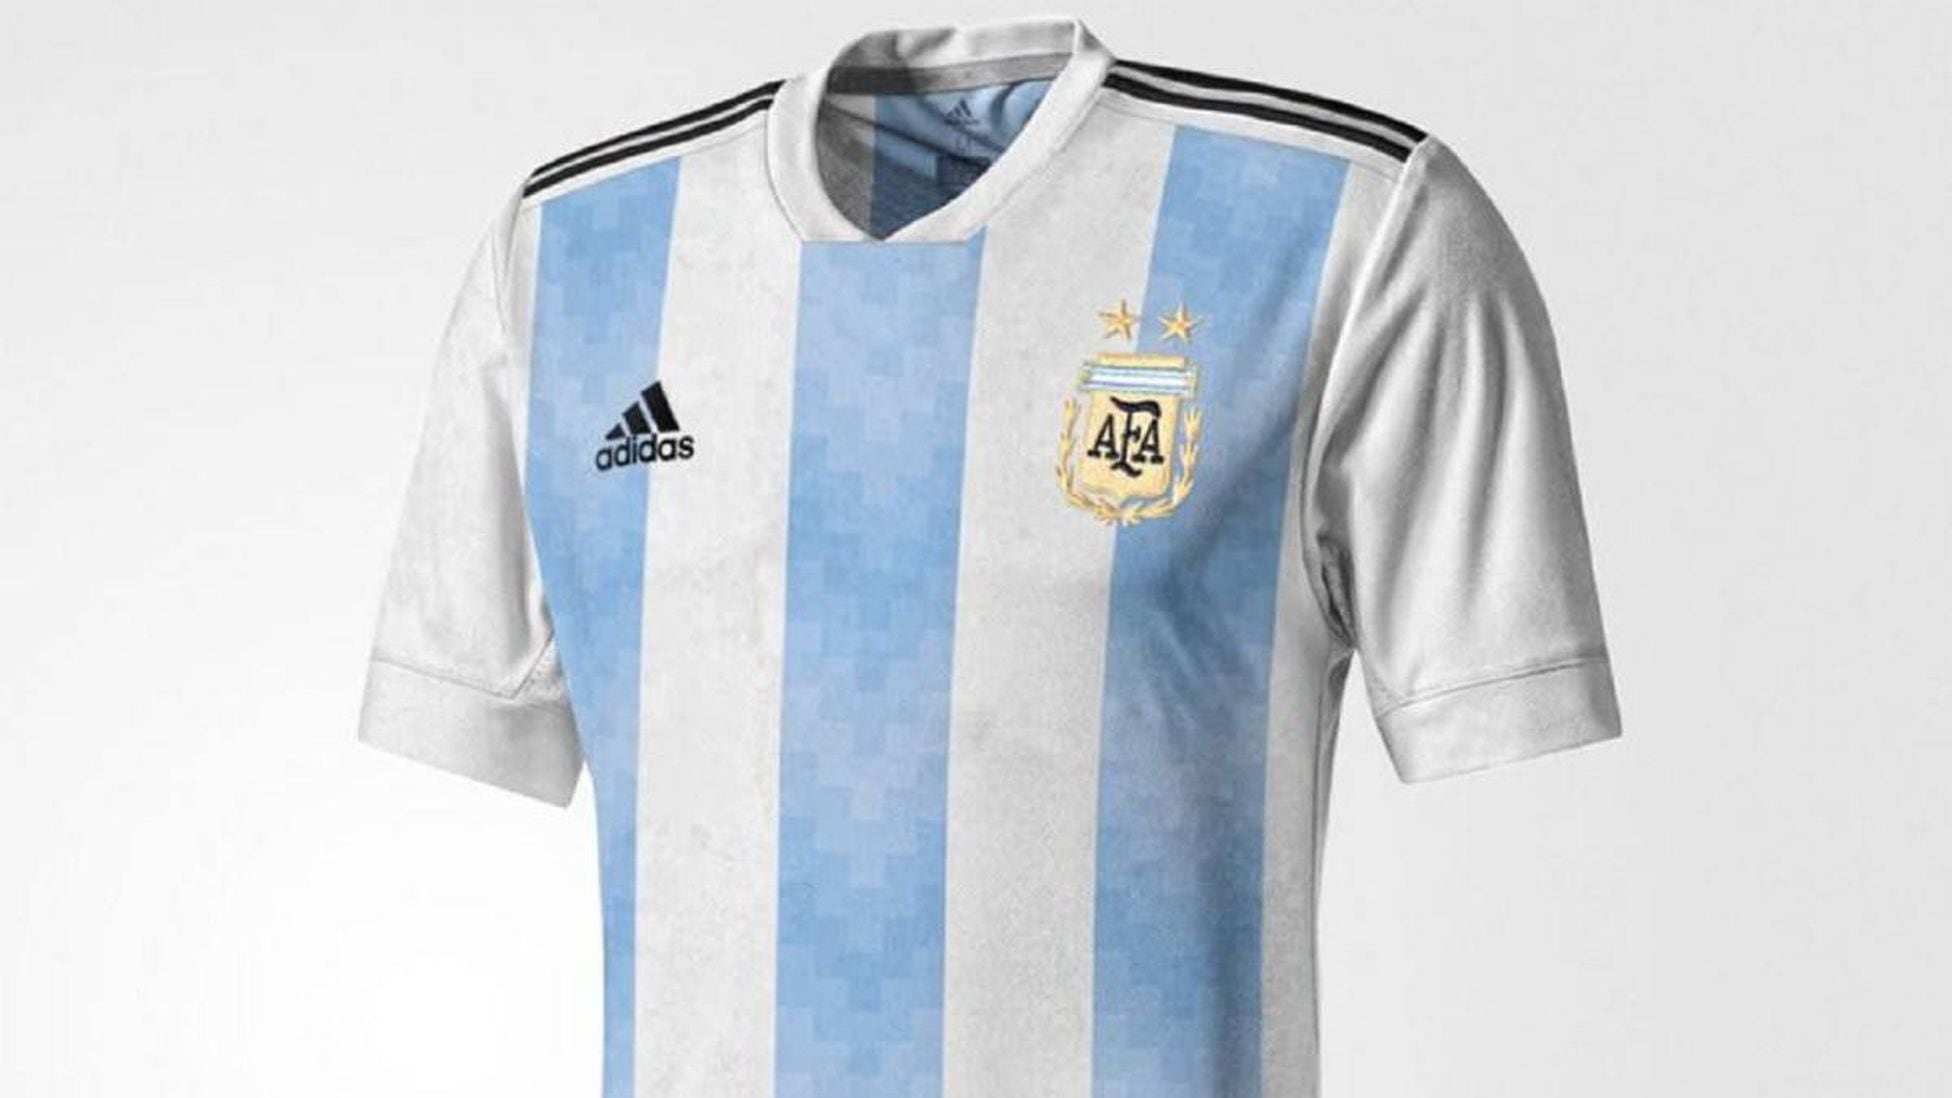 detrás electo estoy sediento La camiseta de Argentina en el Mundial de Rusia 2018? - AS Argentina